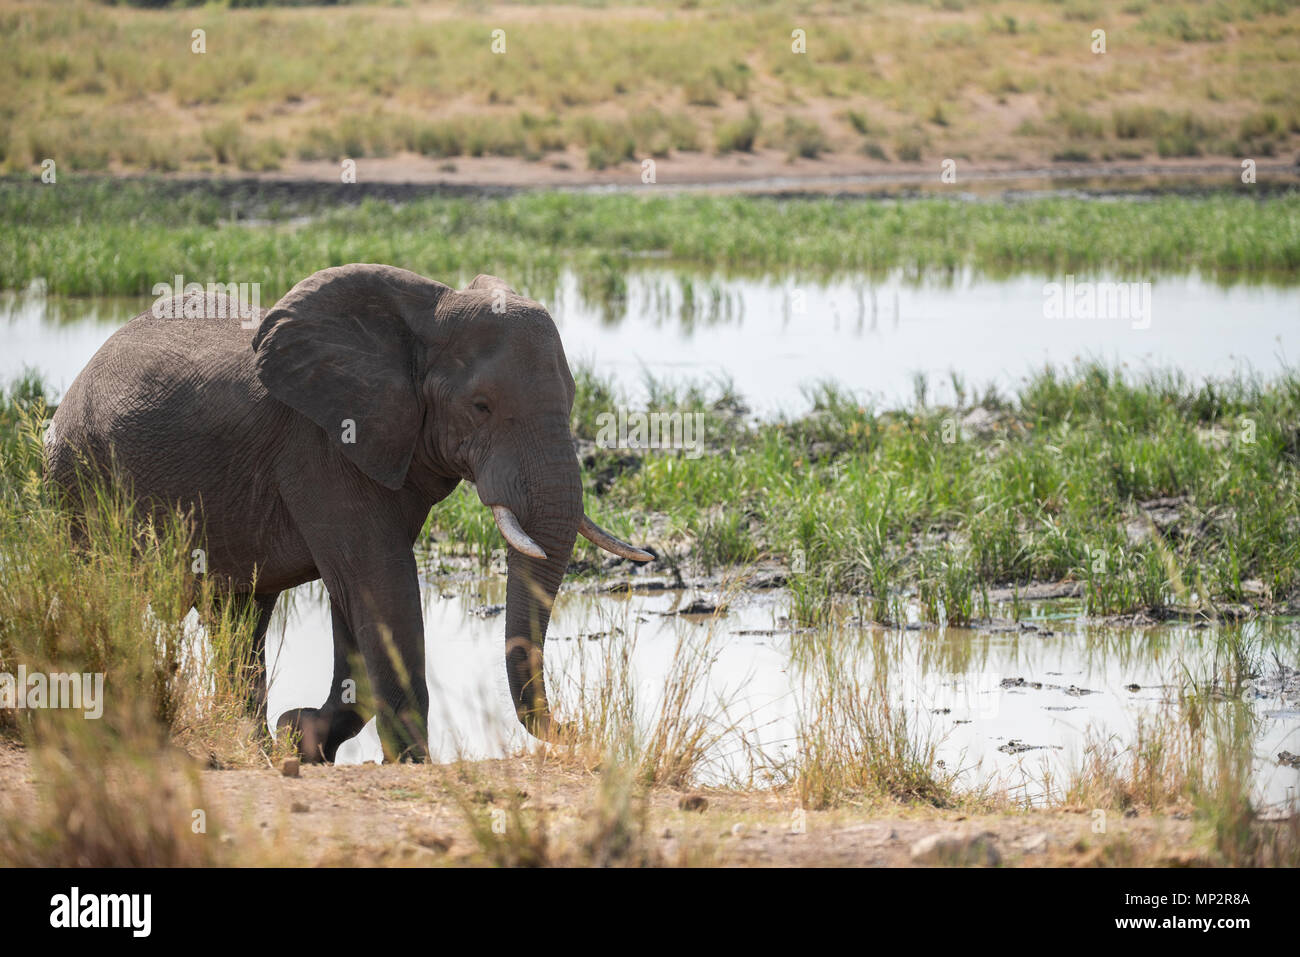 An elephant bull walking alongside a pan of water Stock Photo